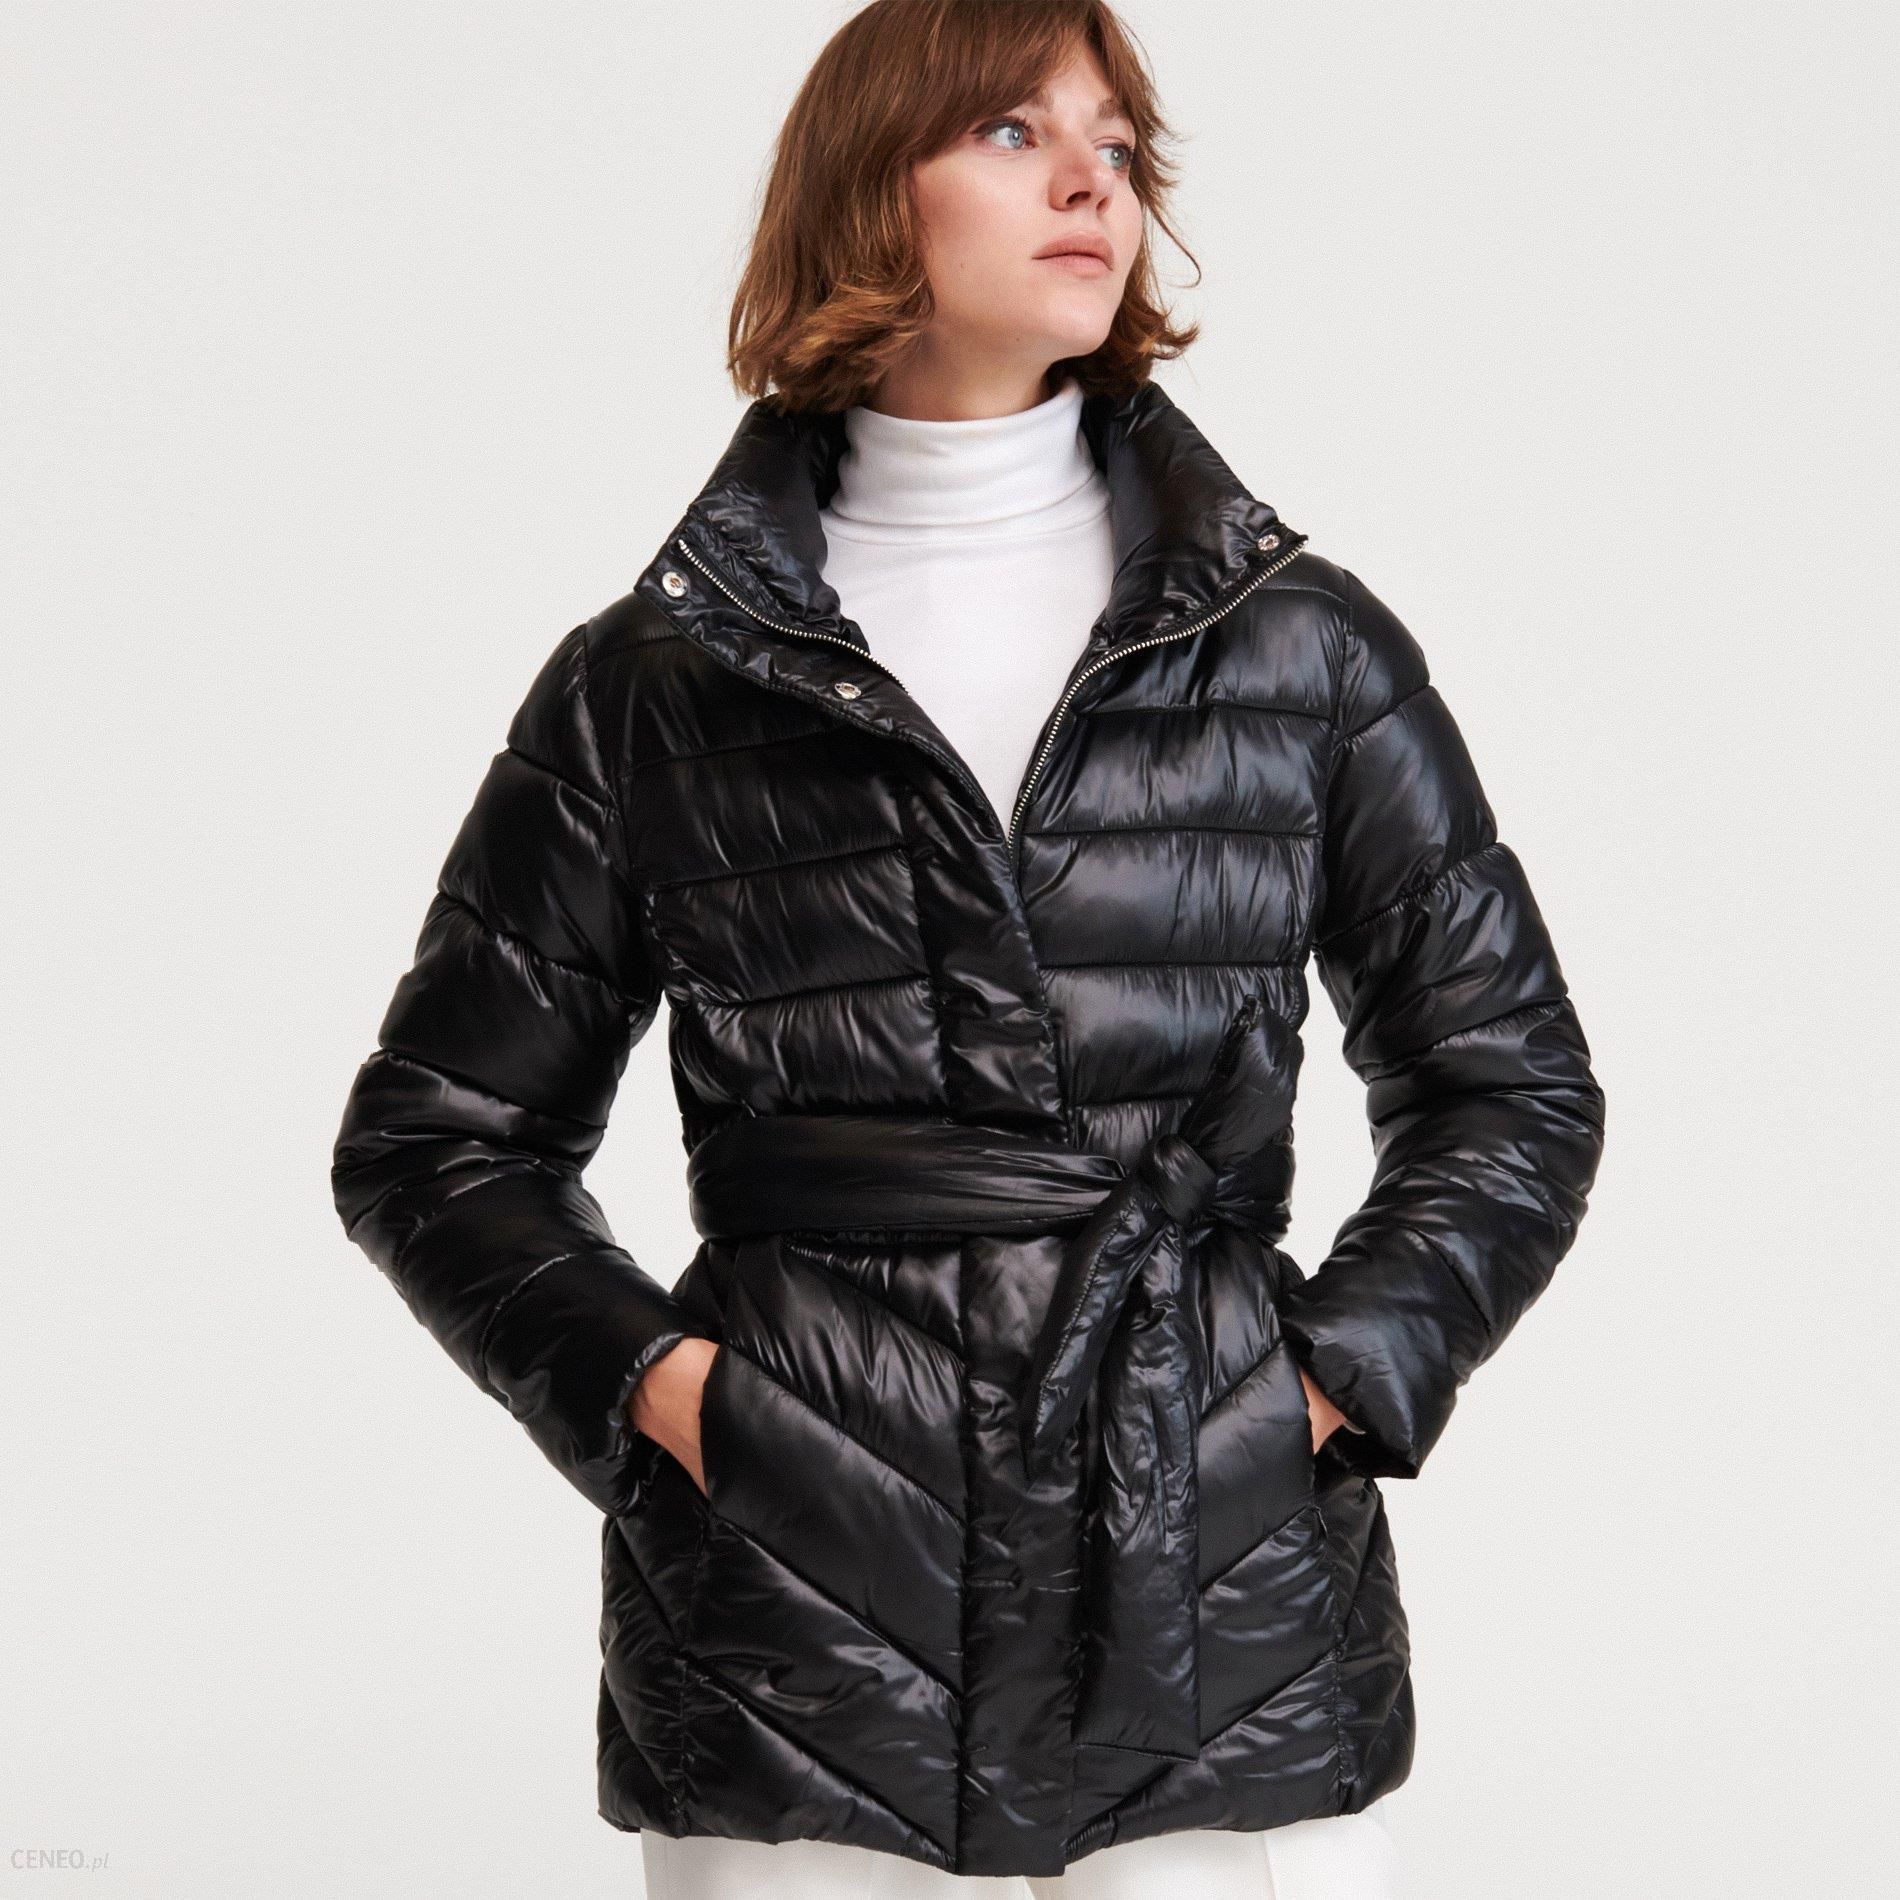 Черная куртка с поясом. Куртка резервед женская. Куртка резервед с поясом. 1036c-08x-s куртка женская Reserved.